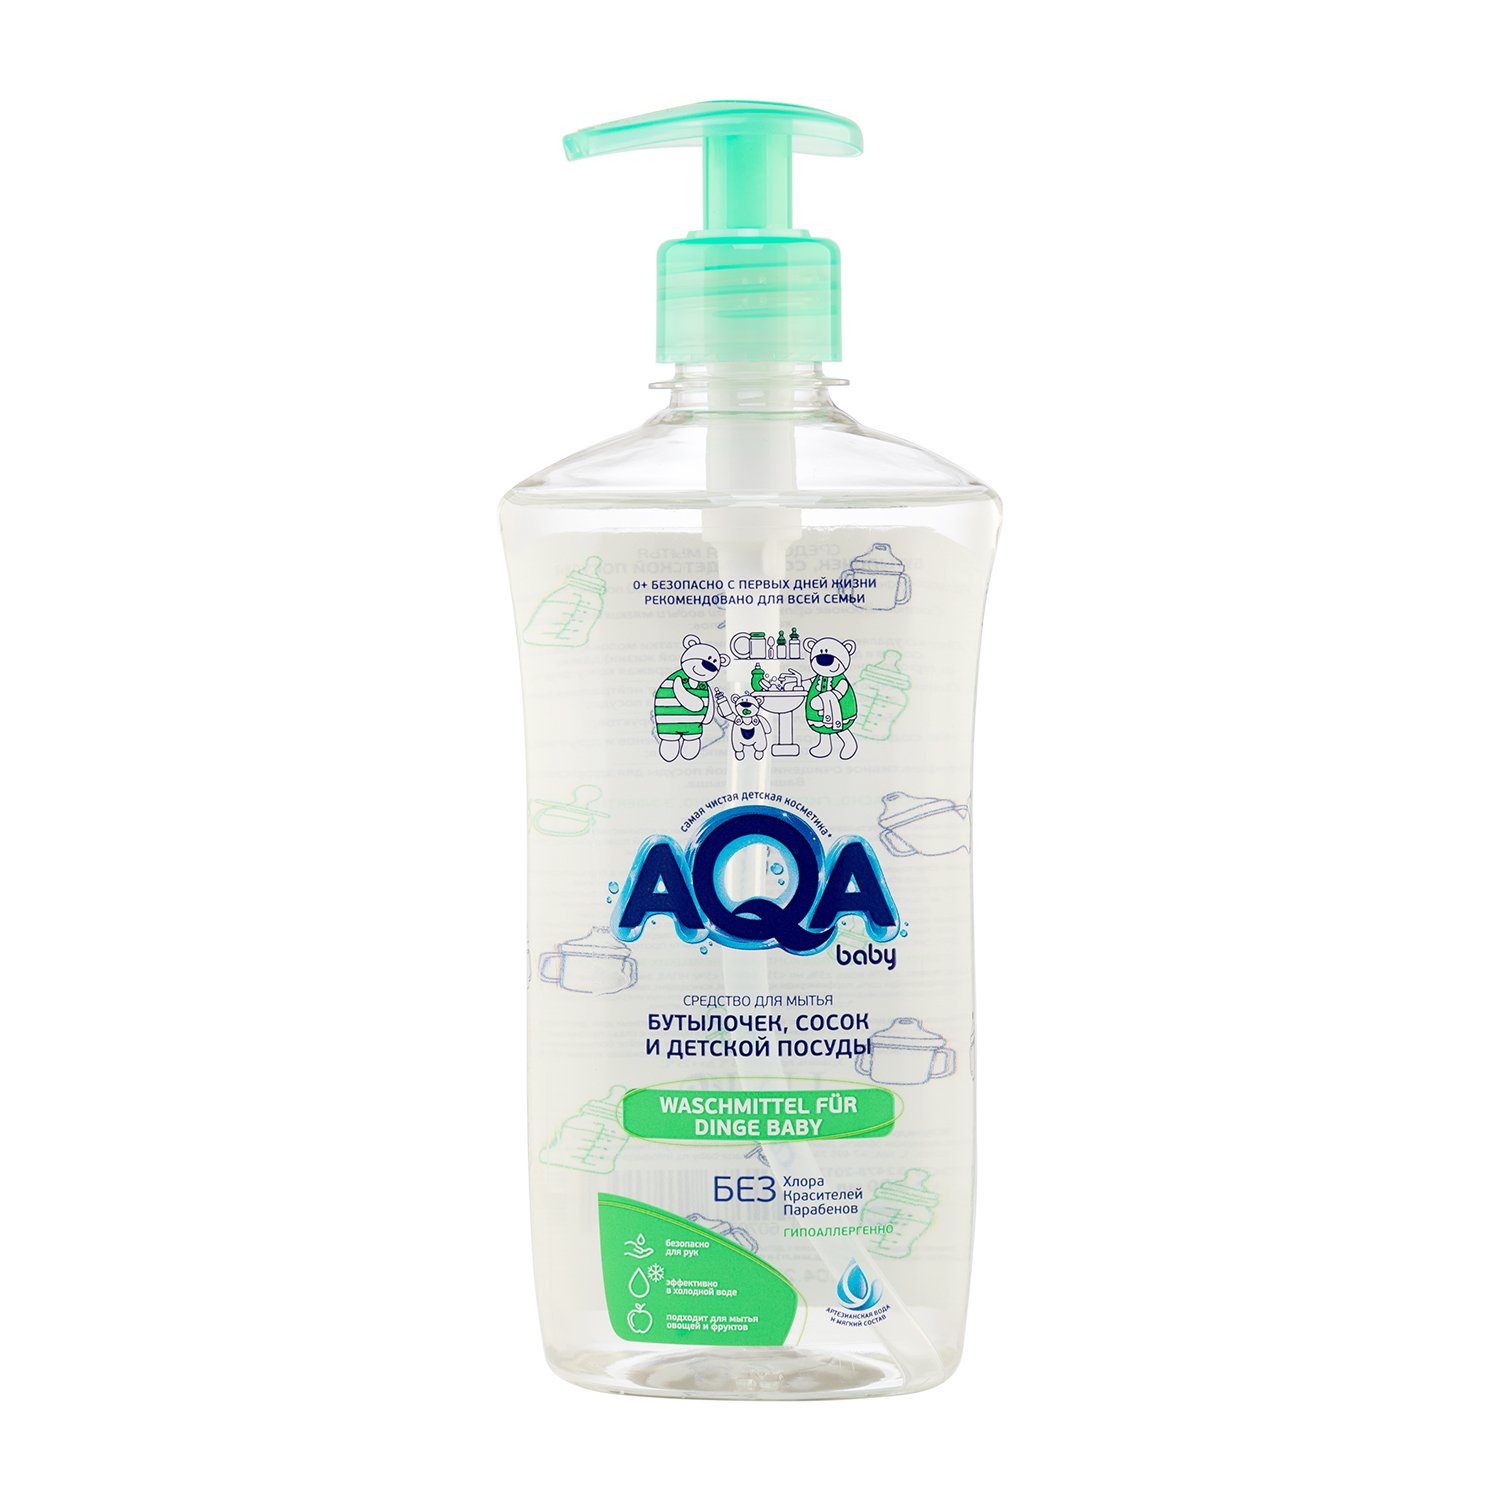 Средство AQA baby для мытья бутылочек, сосок и детской посуды 500 мл - фото 1